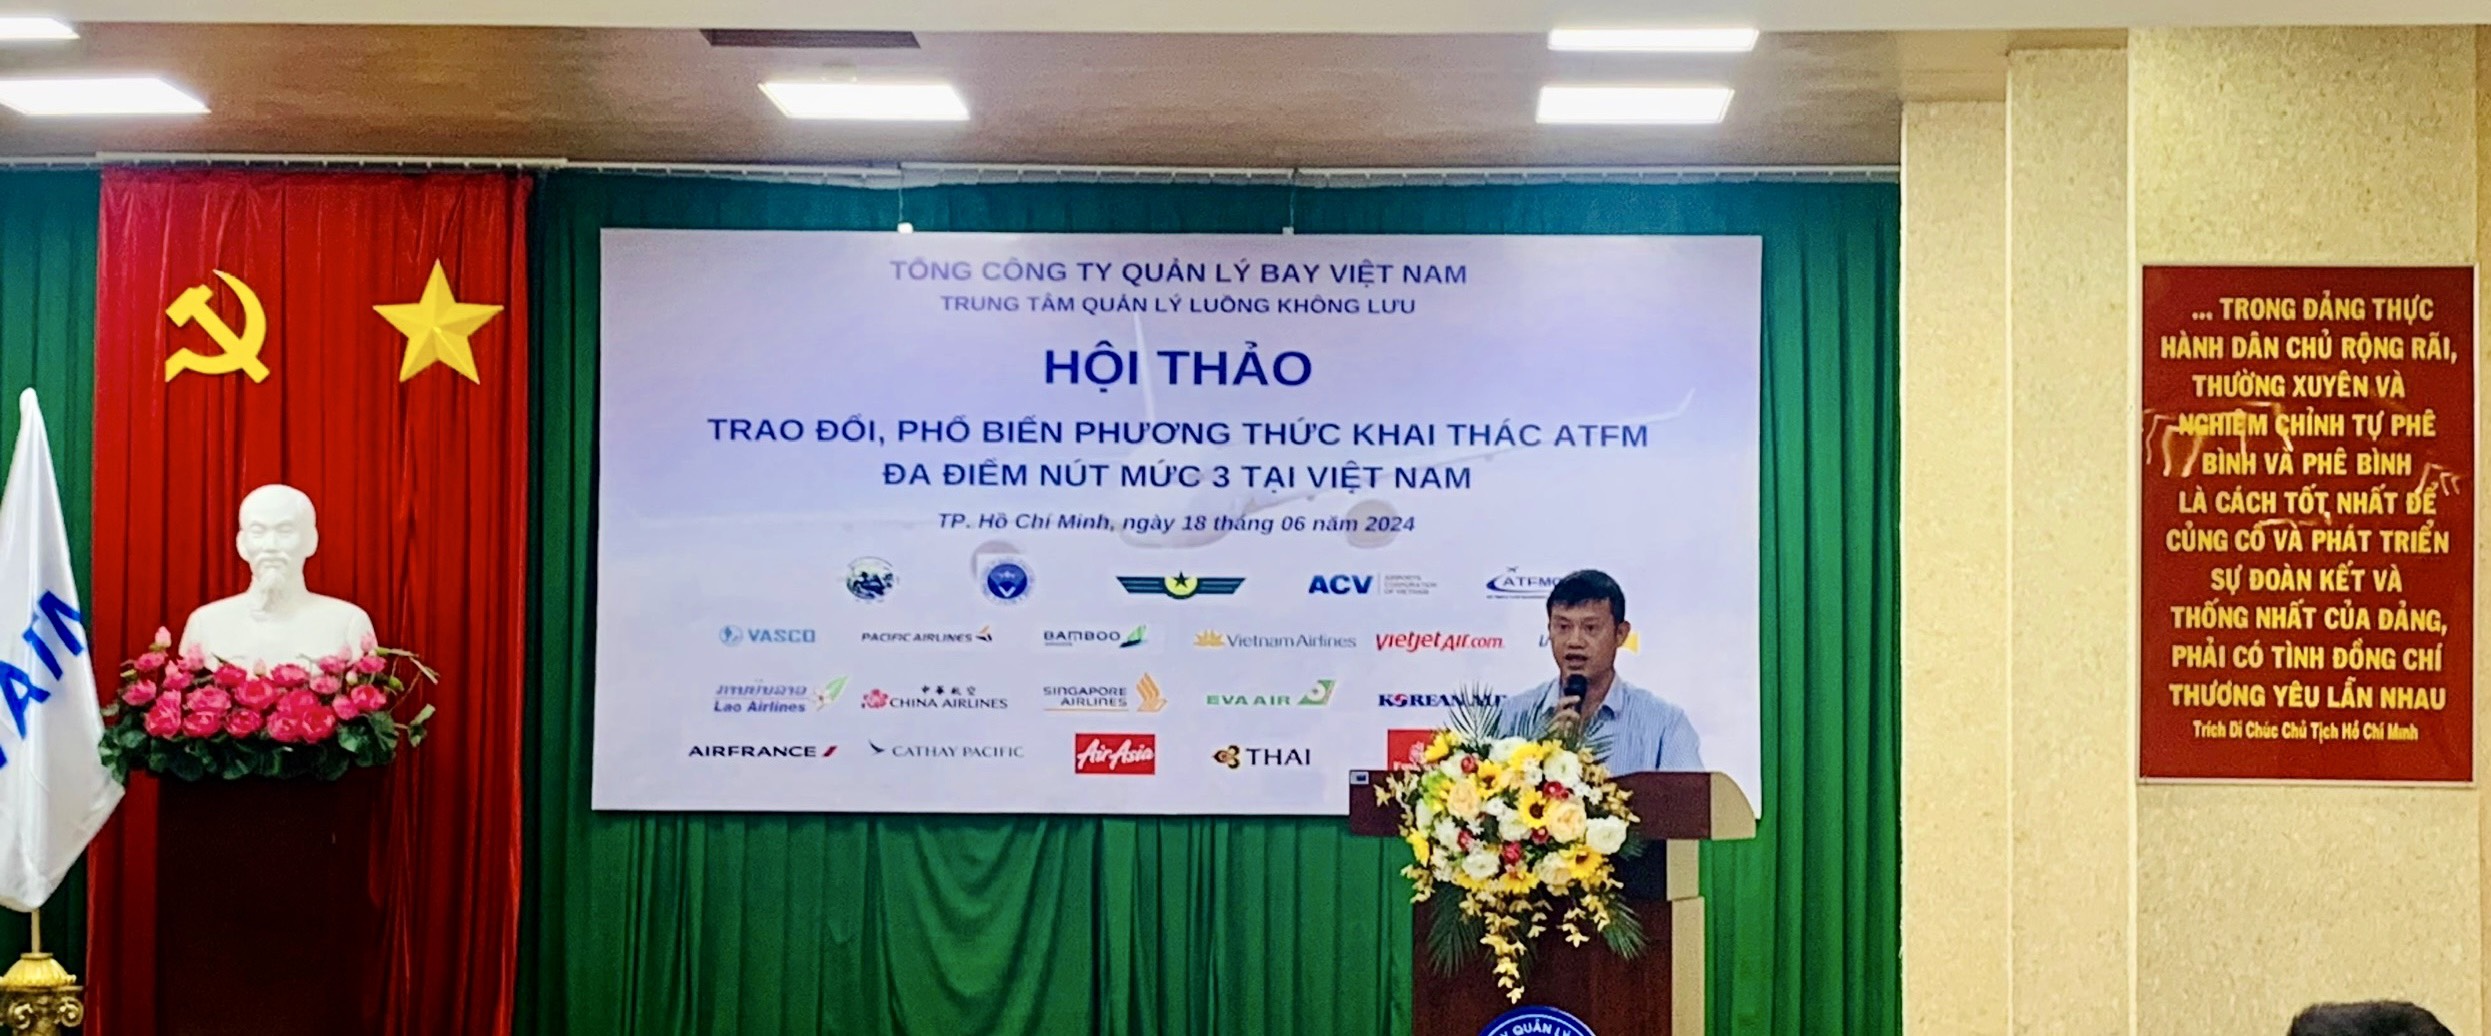 Trung tâm Quản lý luồng không lưu tổ chức Hội thảo triển khai áp dụng Phương thức khai thác ATFM đa điểm nút mức 3 tại Việt Nam